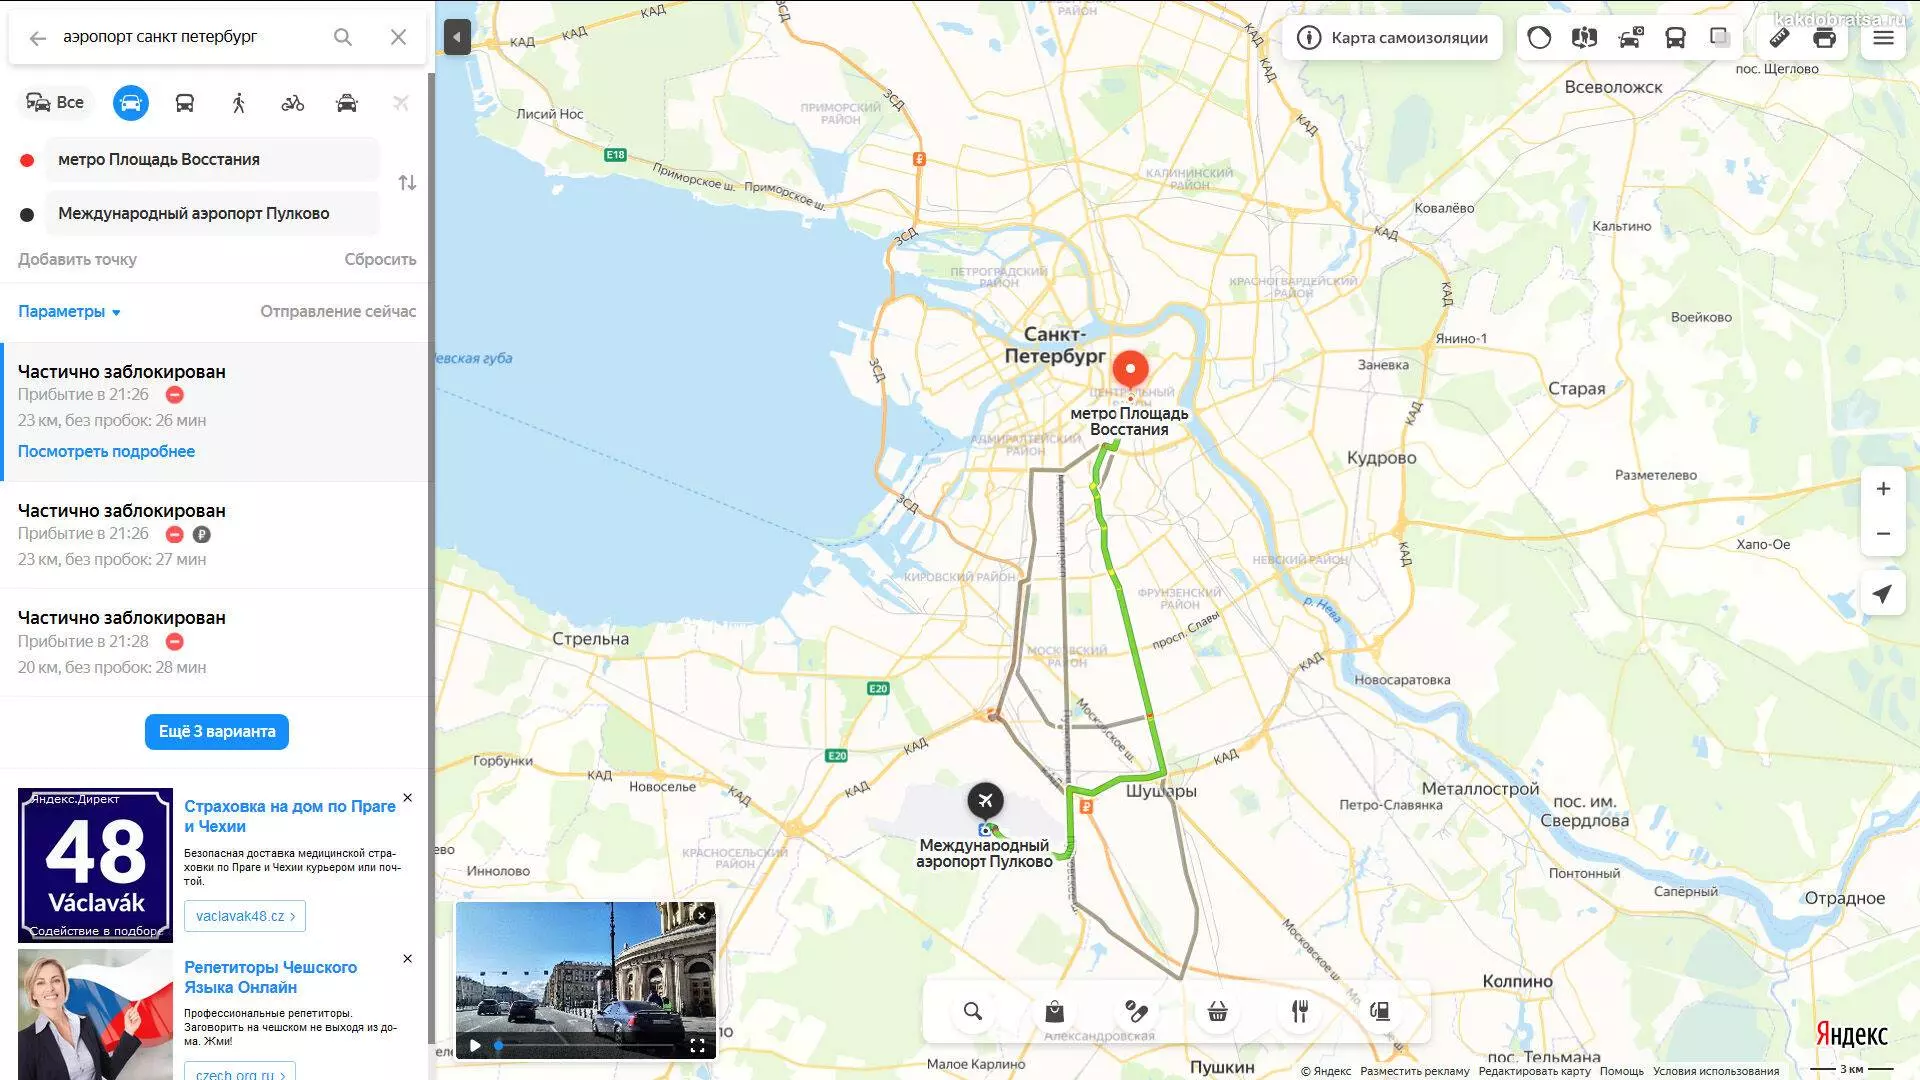 Сколько аэропортов в санкт-петербурге и их названия